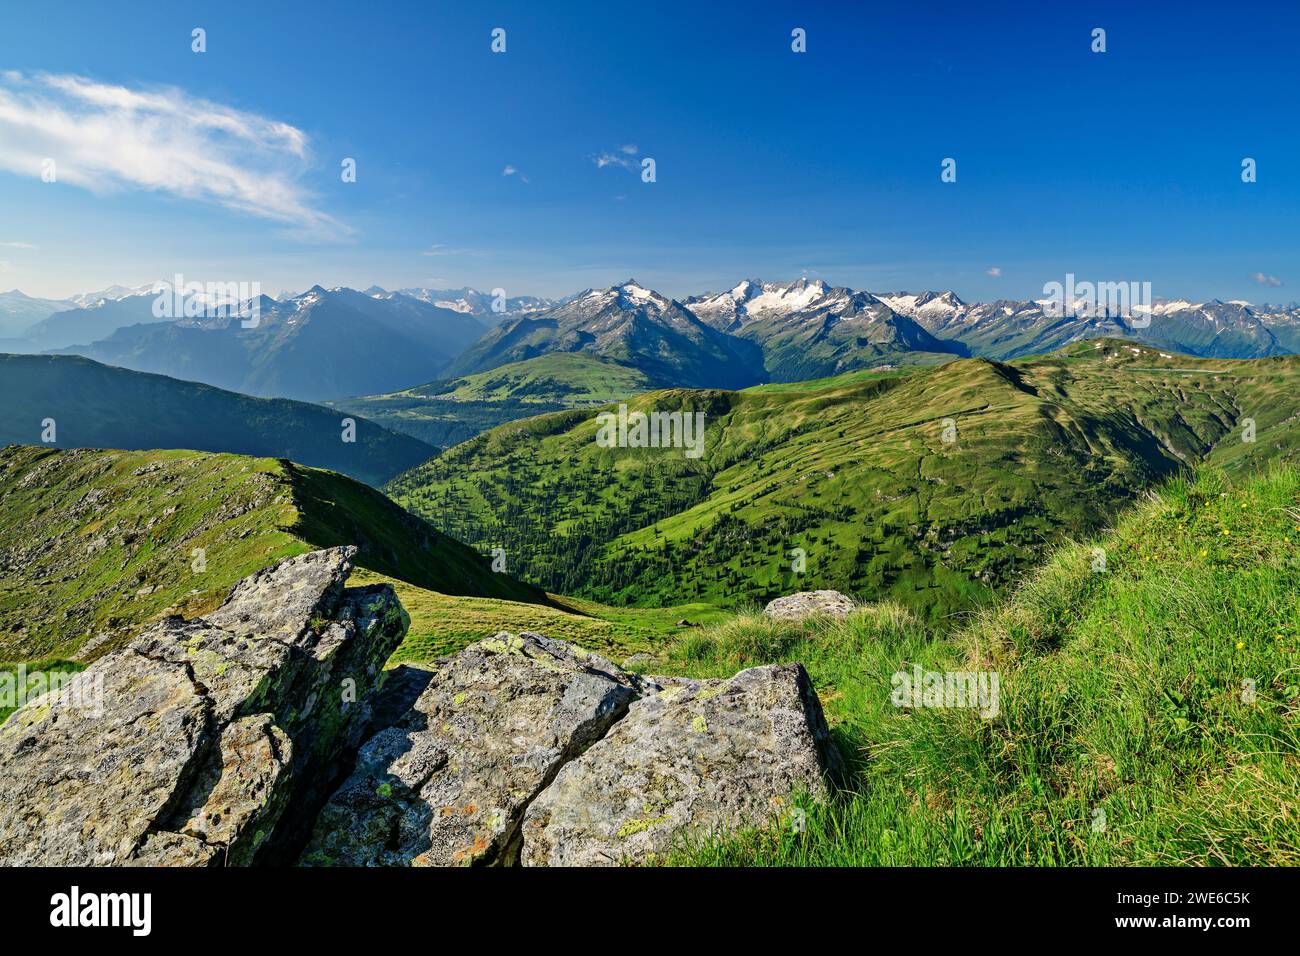 Austria, Tirolo, vista panoramica dalla vetta del Salzachgeier nelle Alpi Kitzbuhel Foto Stock